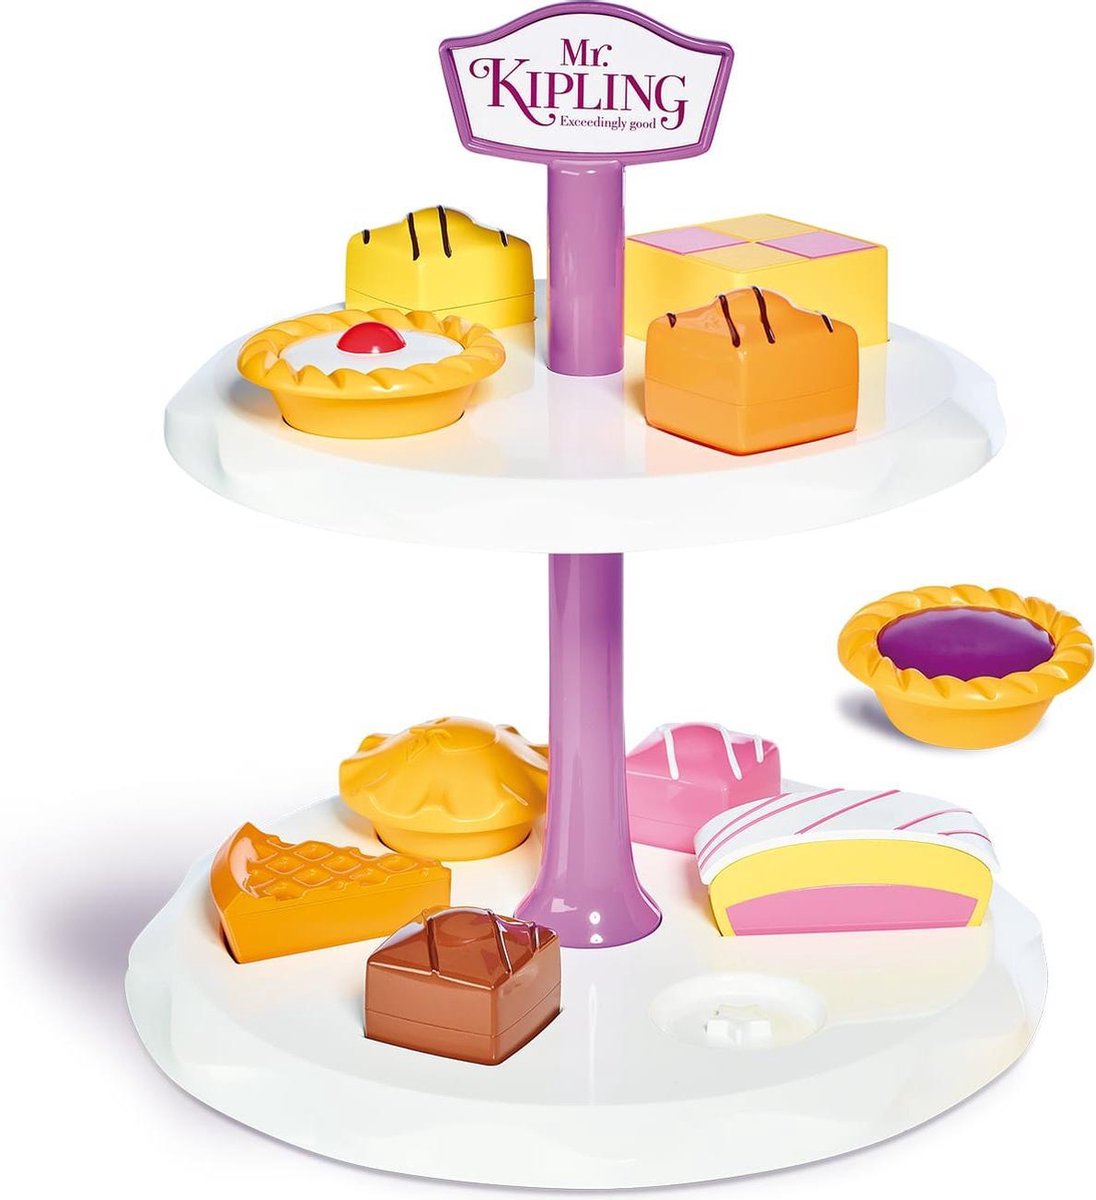 Casdon Mr Kipling Cake Tribune - Casdon